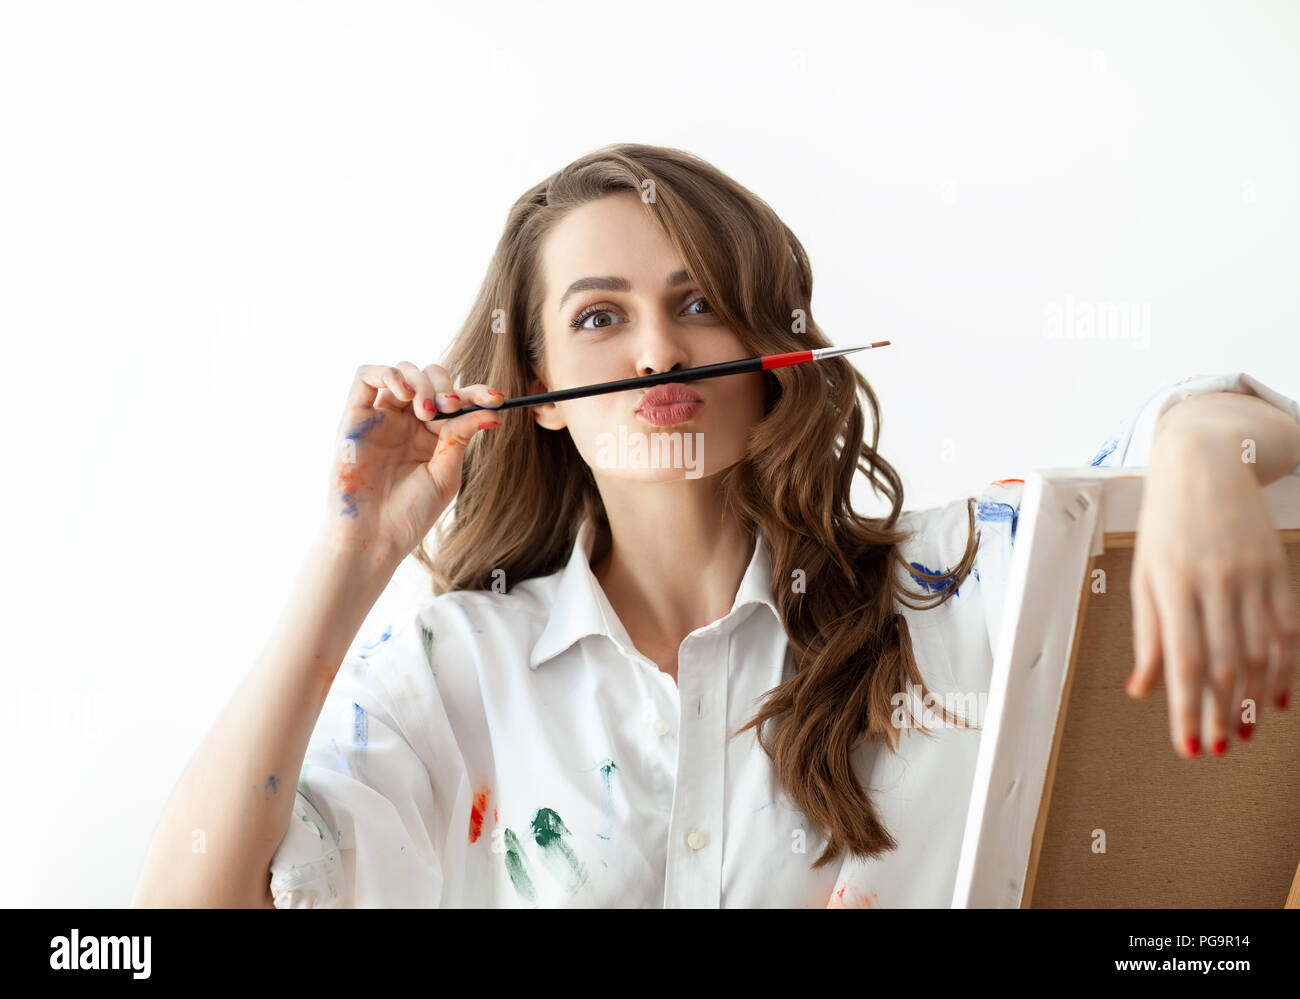 Porträt der jungen Frau, die Gesichter und schildert Schnurrbart mit Hilfe von Pinsel. Spaß-Konzept Stockfoto